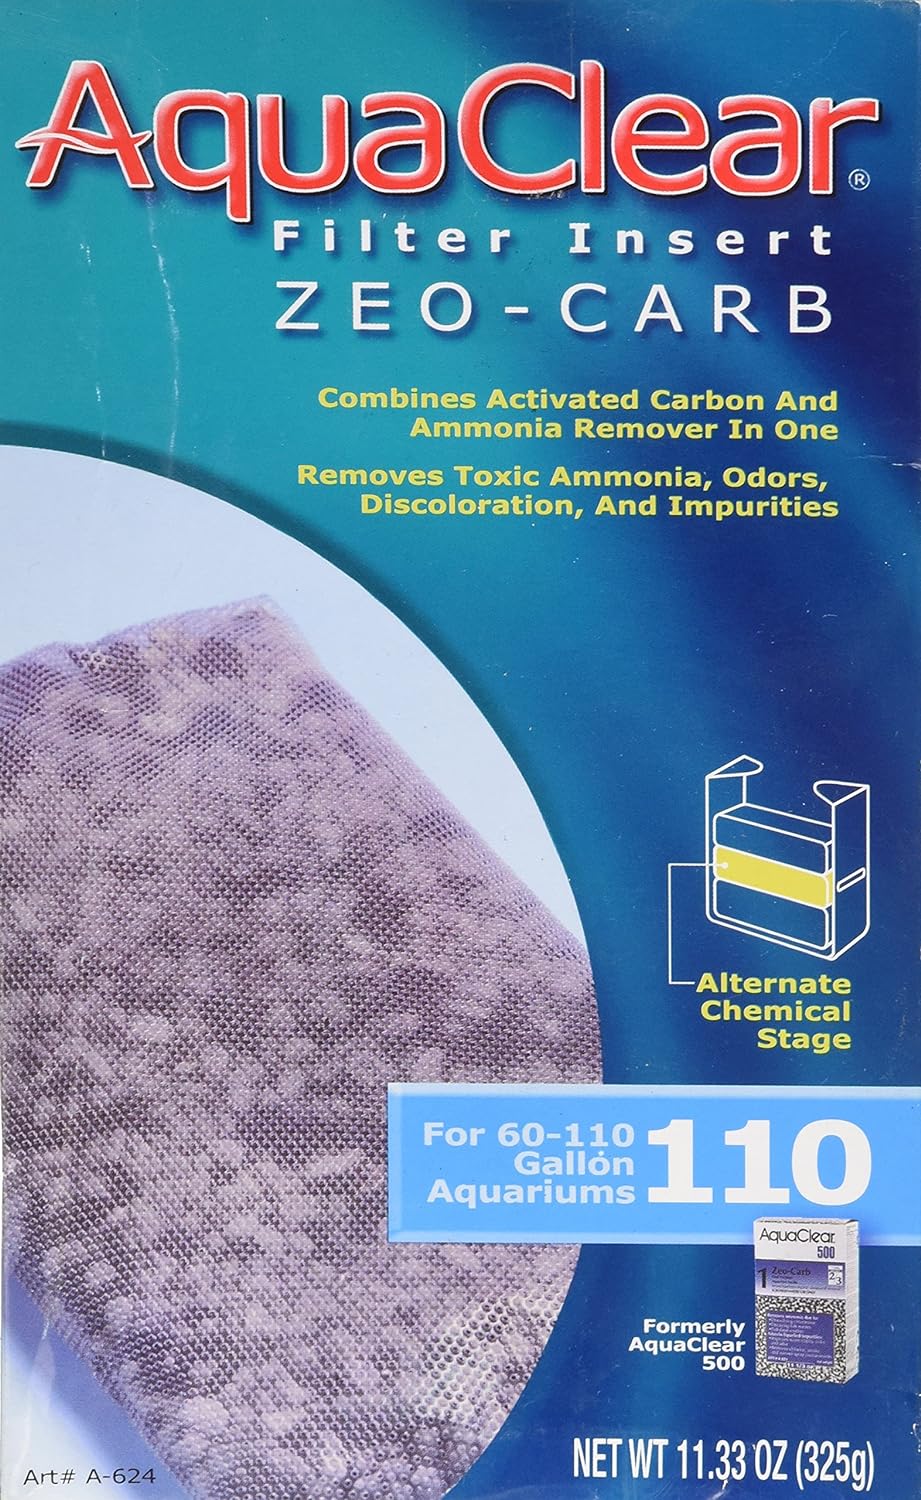 AquaClear Filter Insert - Zeo-Carb (60 - 110 Gallon)